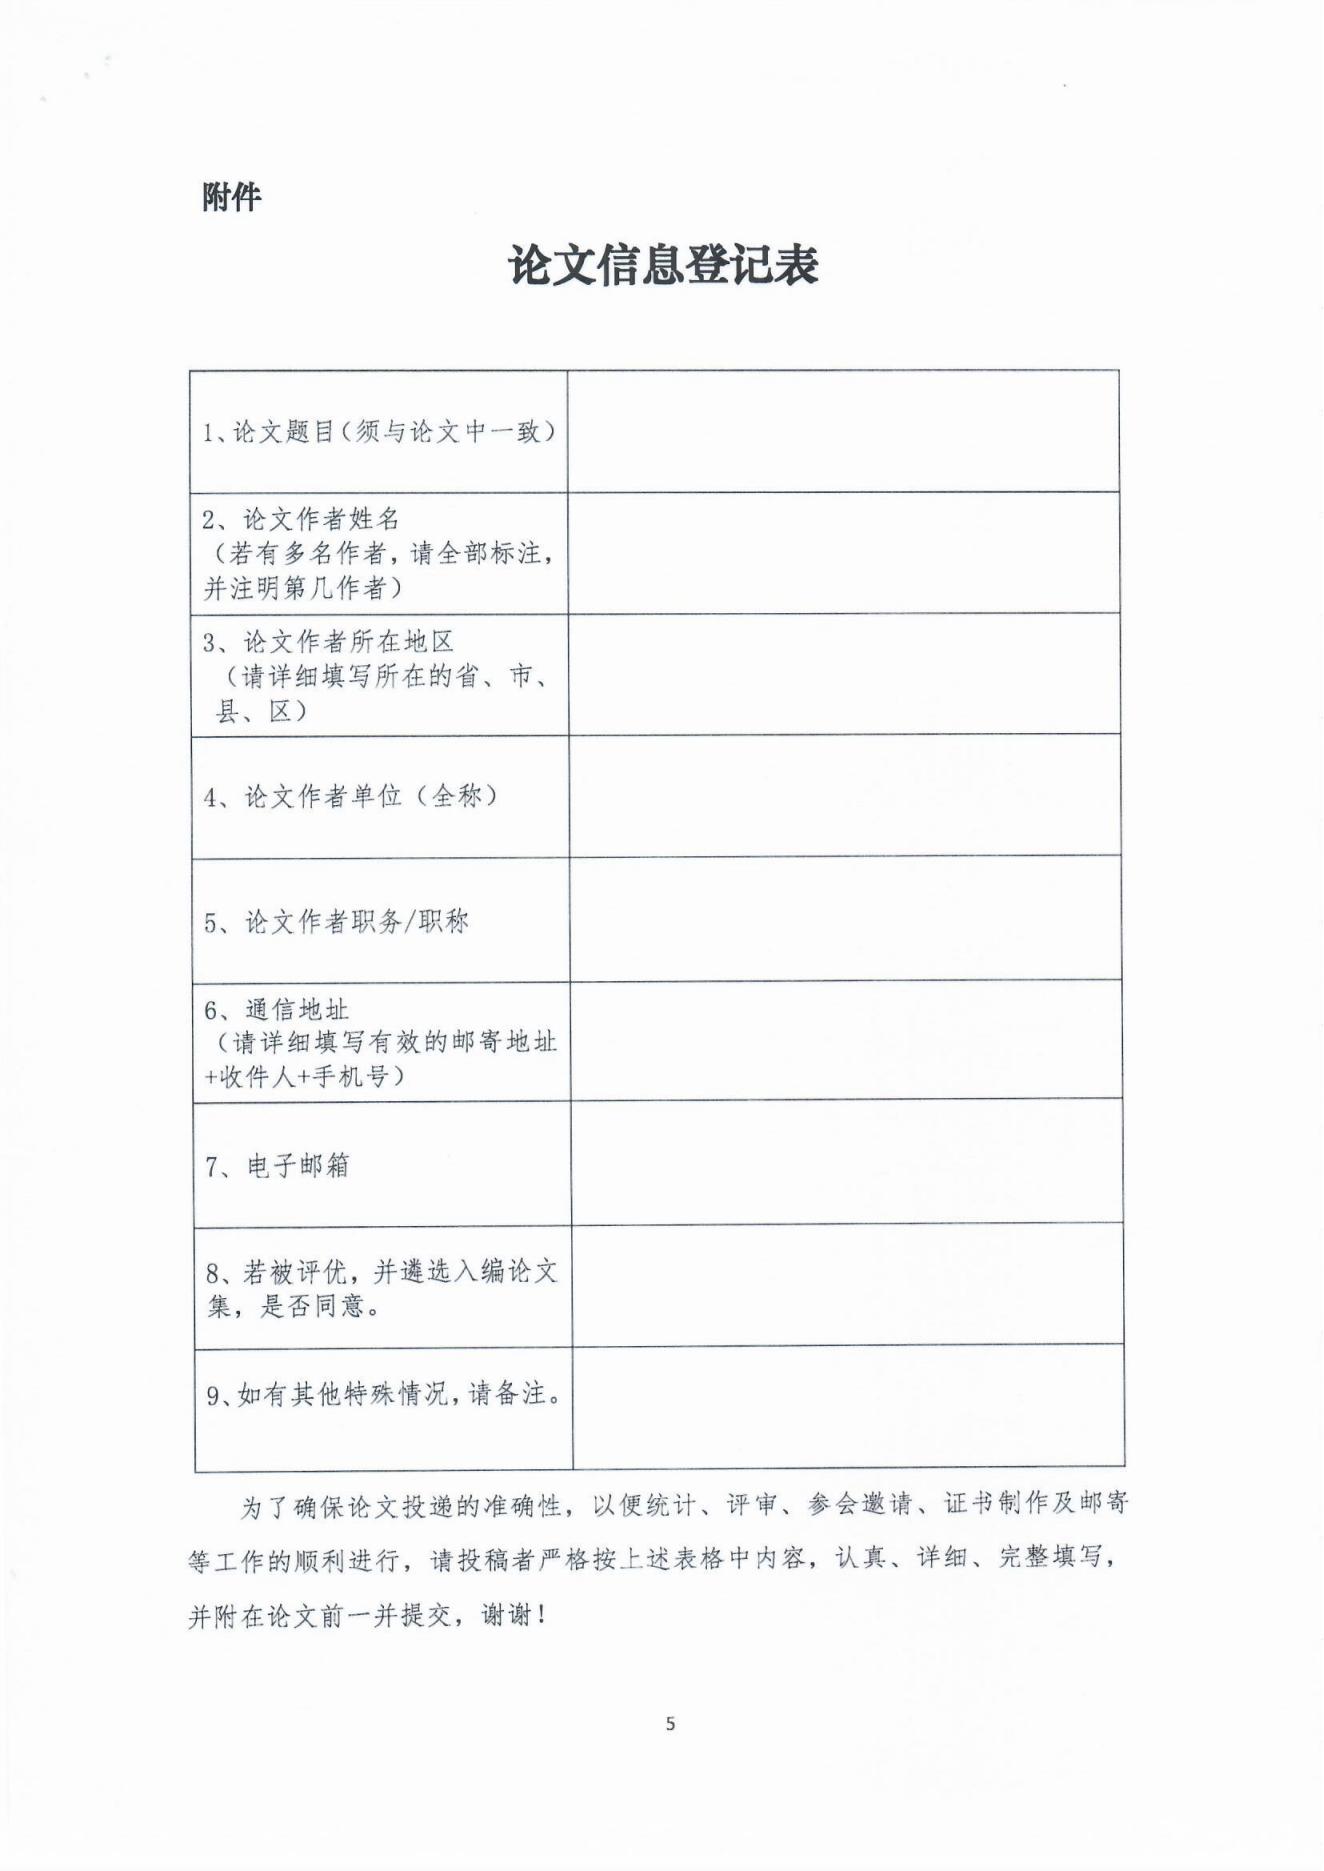 2022年首届中国老龄志愿与公益服务高峰论坛论文征集通知_04.jpg